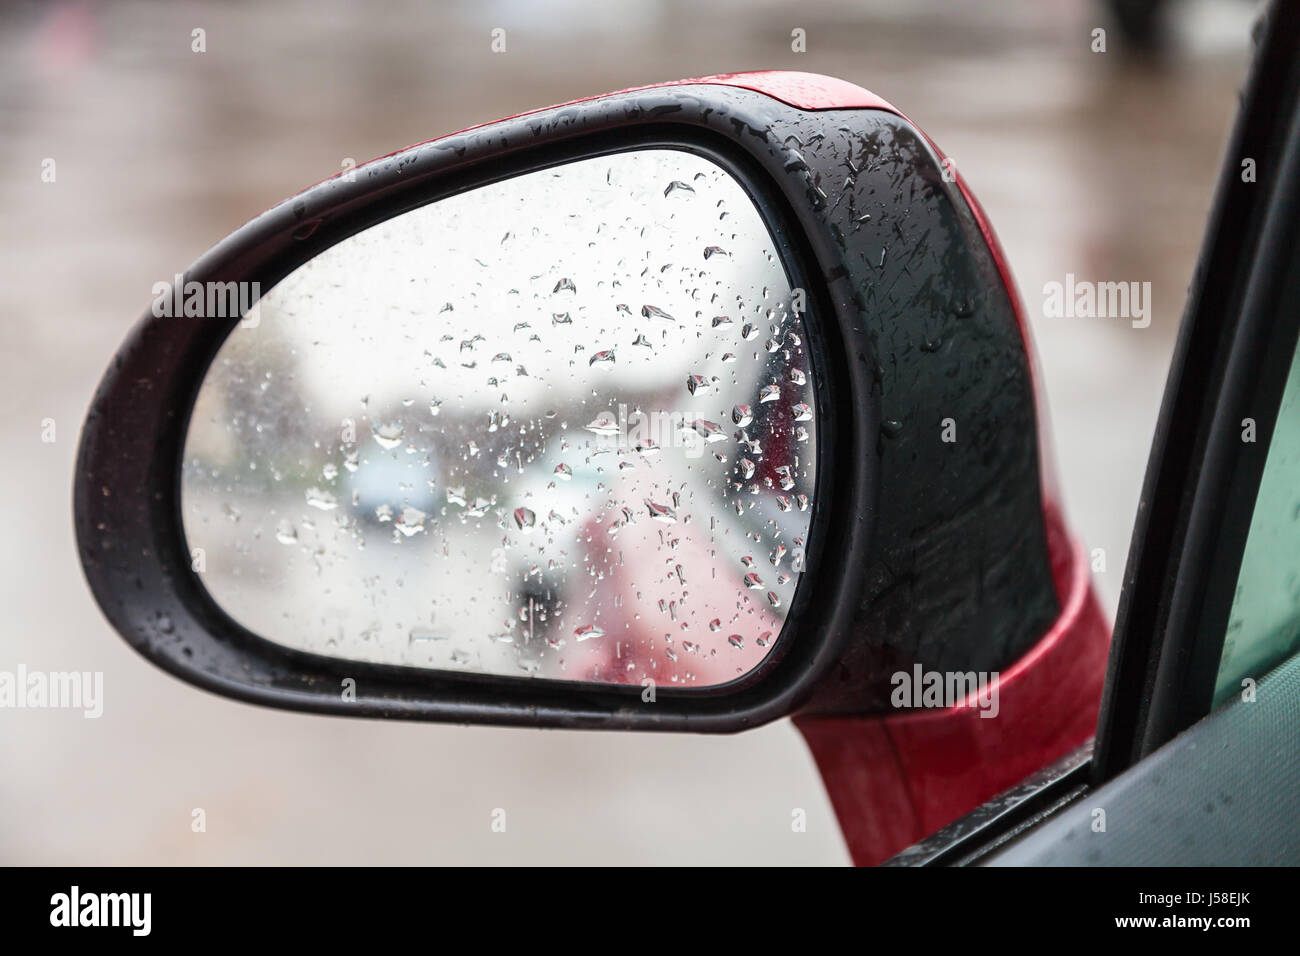 Immagini Stock - Un'immagine Dello Specchietto Retrovisore Di Un'auto Con  Gocce Di Pioggia Presa Dal Lato Dell'auto.. Image 184374292